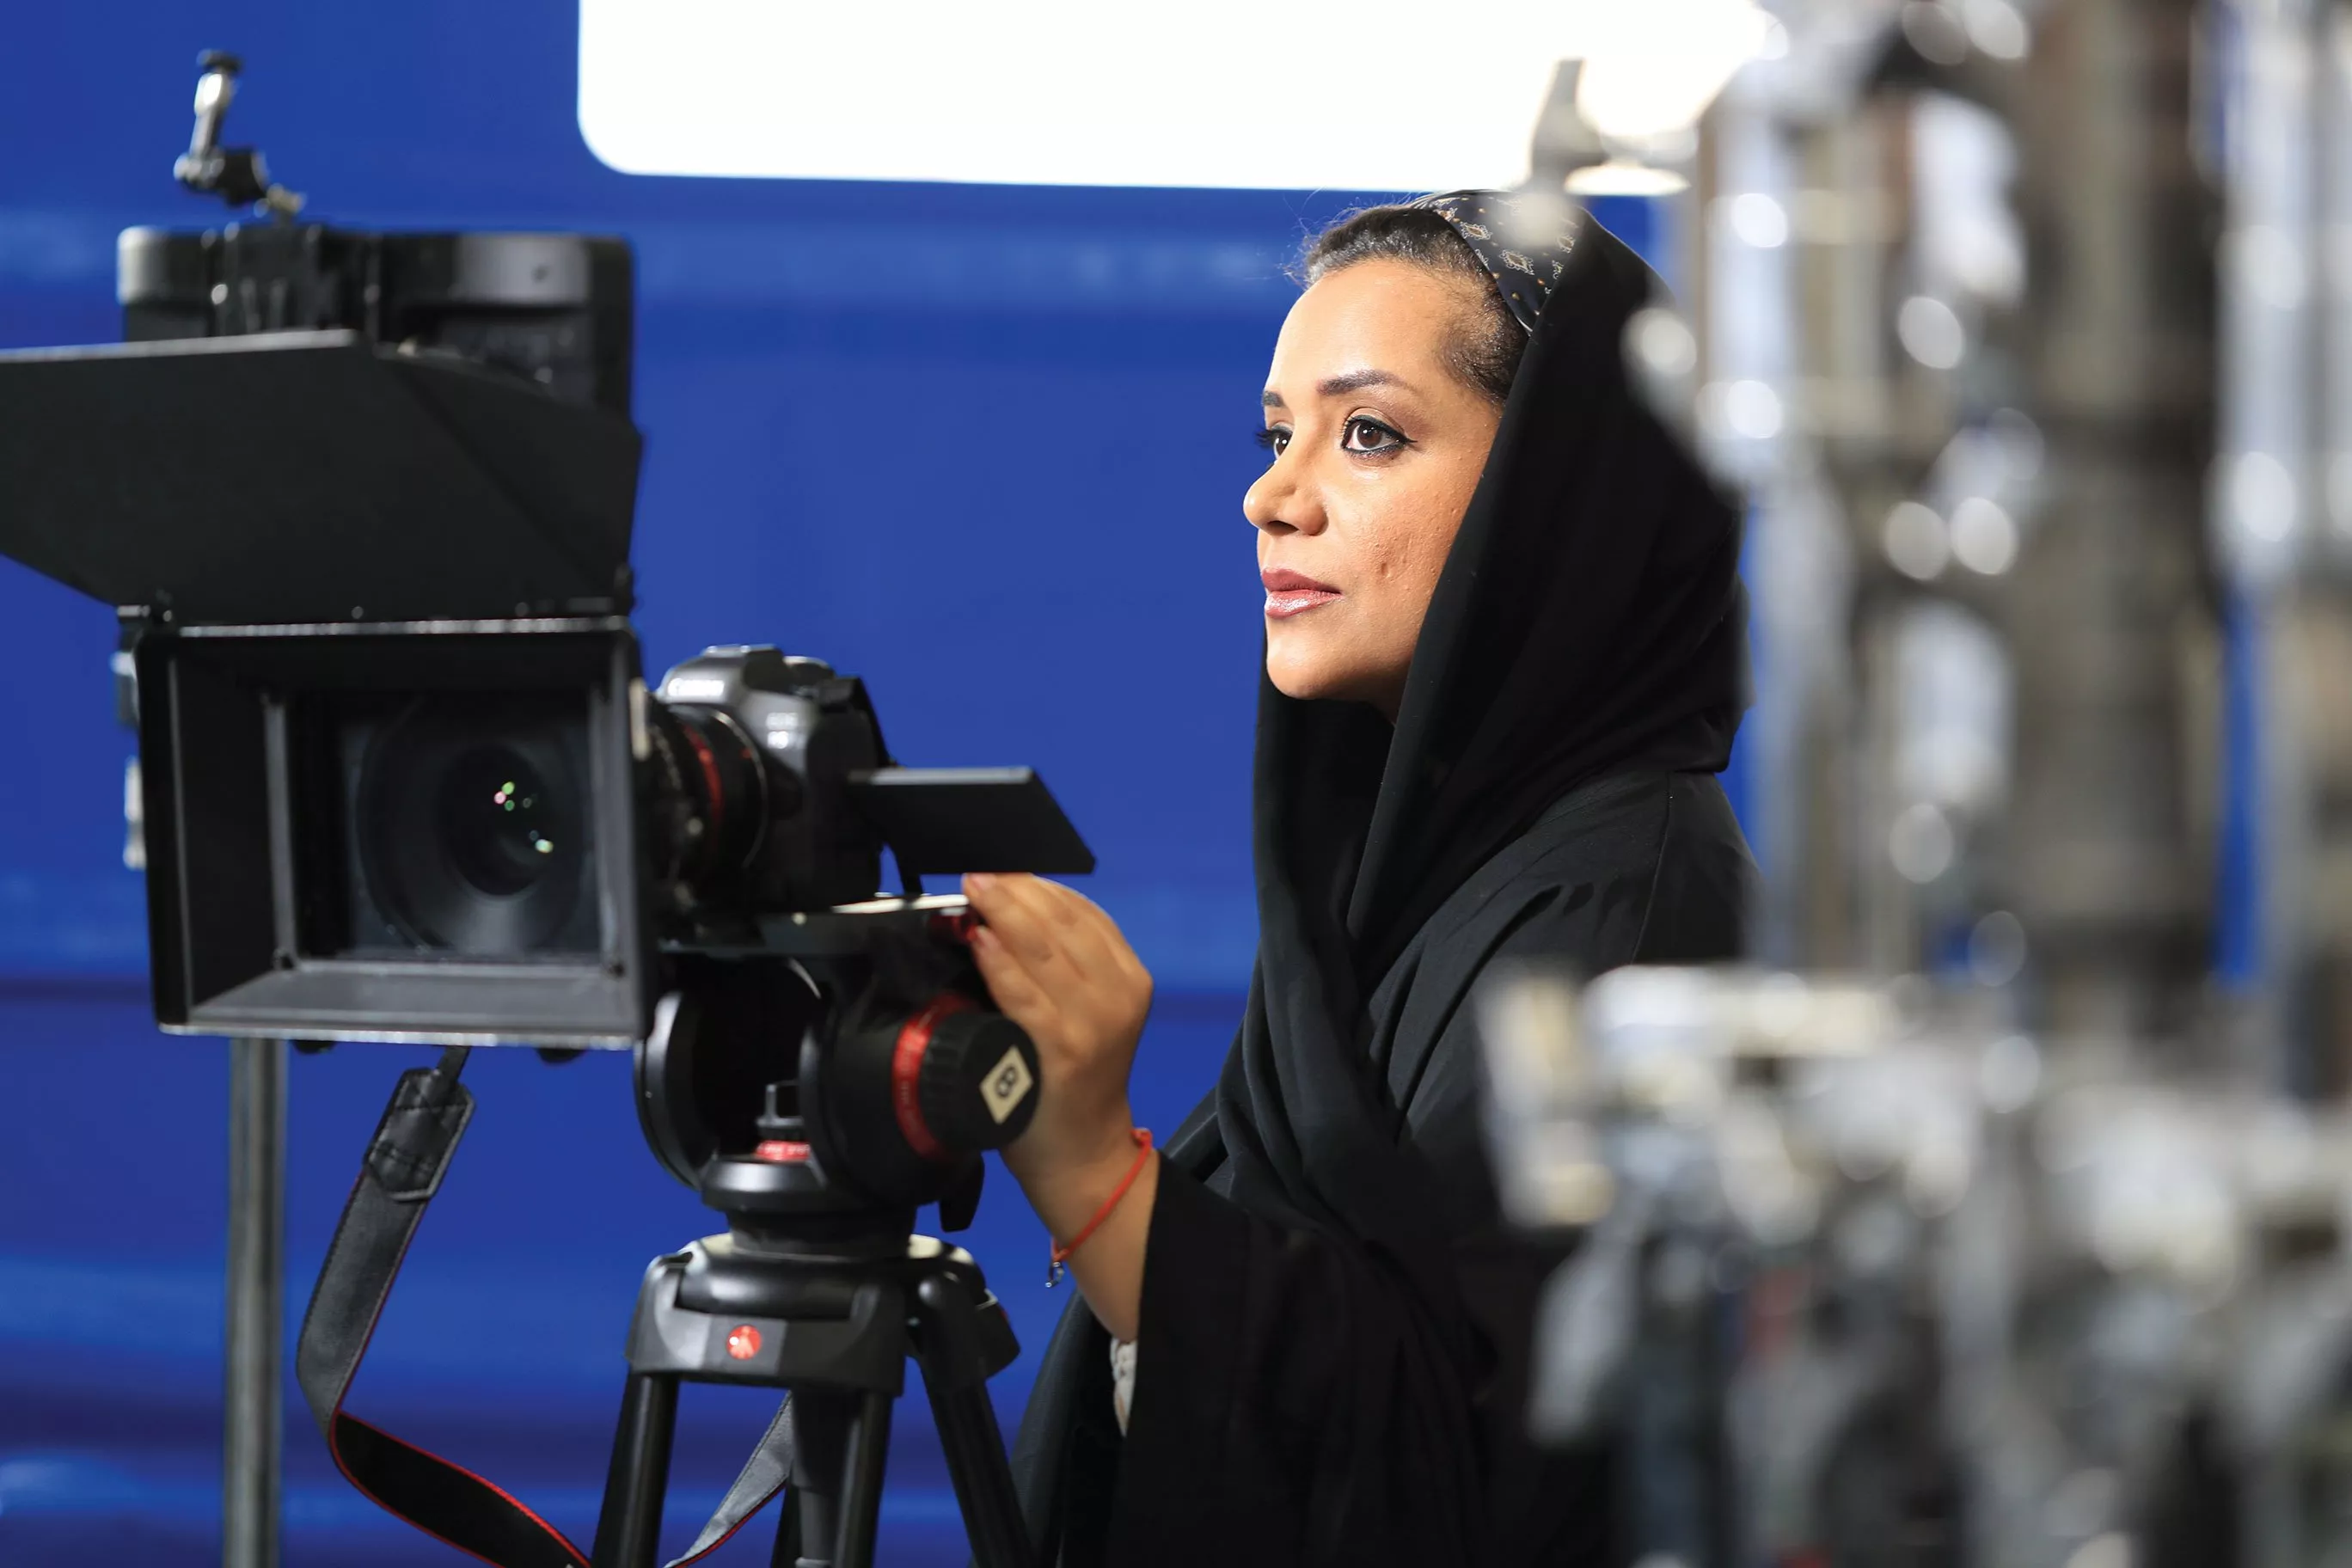 مقابلات خاصة مع 3 مخرجات عربيات... هكذا أعدن تعريف صناعة الأفلام